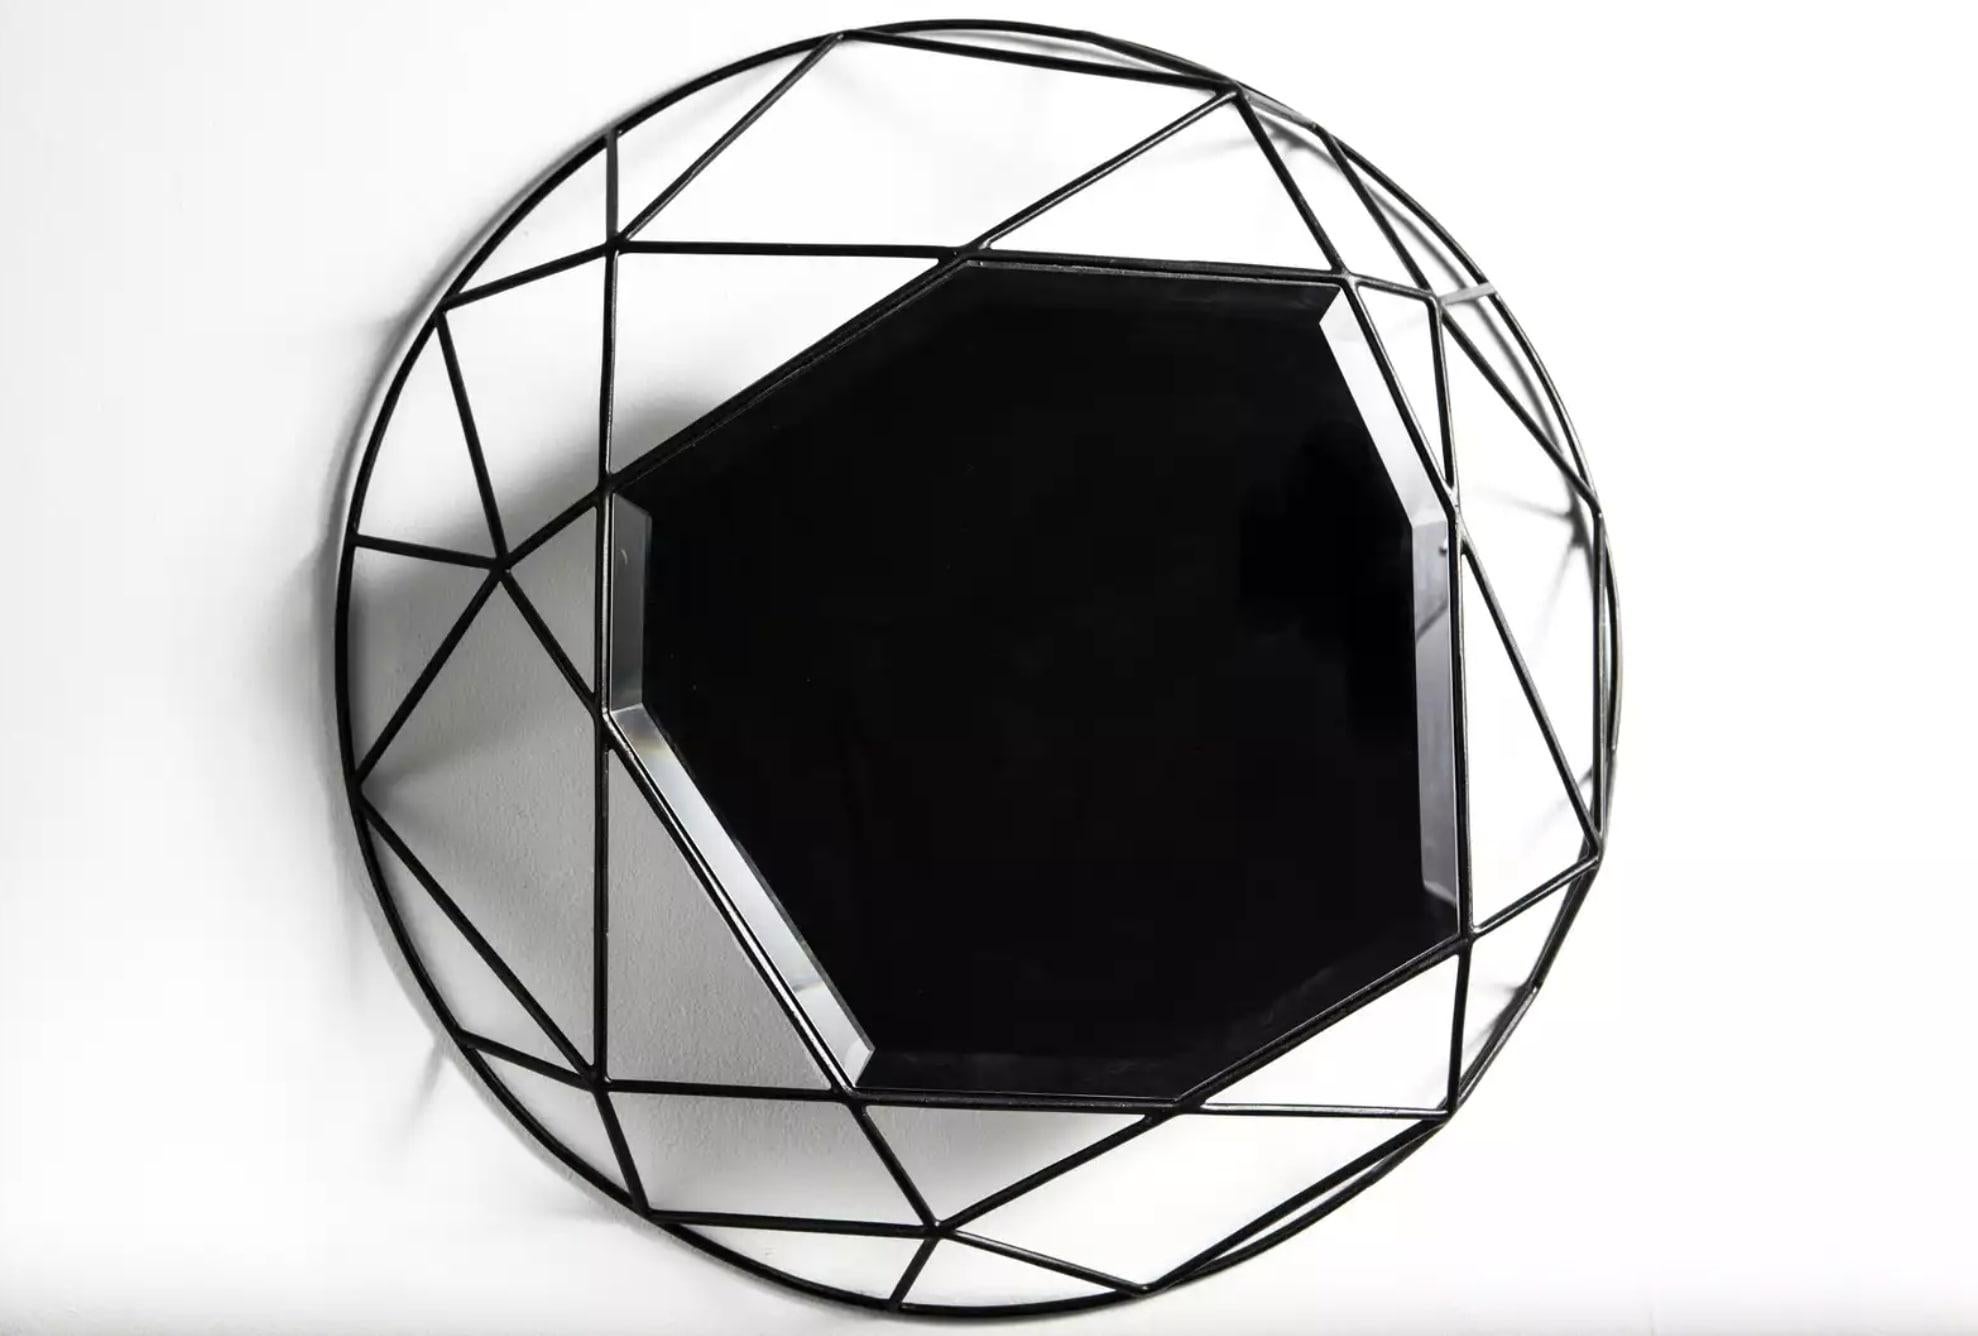 Dieser Spiegel aus pulverbeschichtetem Schmiedeeisen und Glas von Sam Baron wurde erstmals 2014 auf der Design Miami Fair ausgestellt.

Der 1976 in Frankreich geborene Sam Baron hat einen Abschluss in Design an der Schule der Schönen Künste in